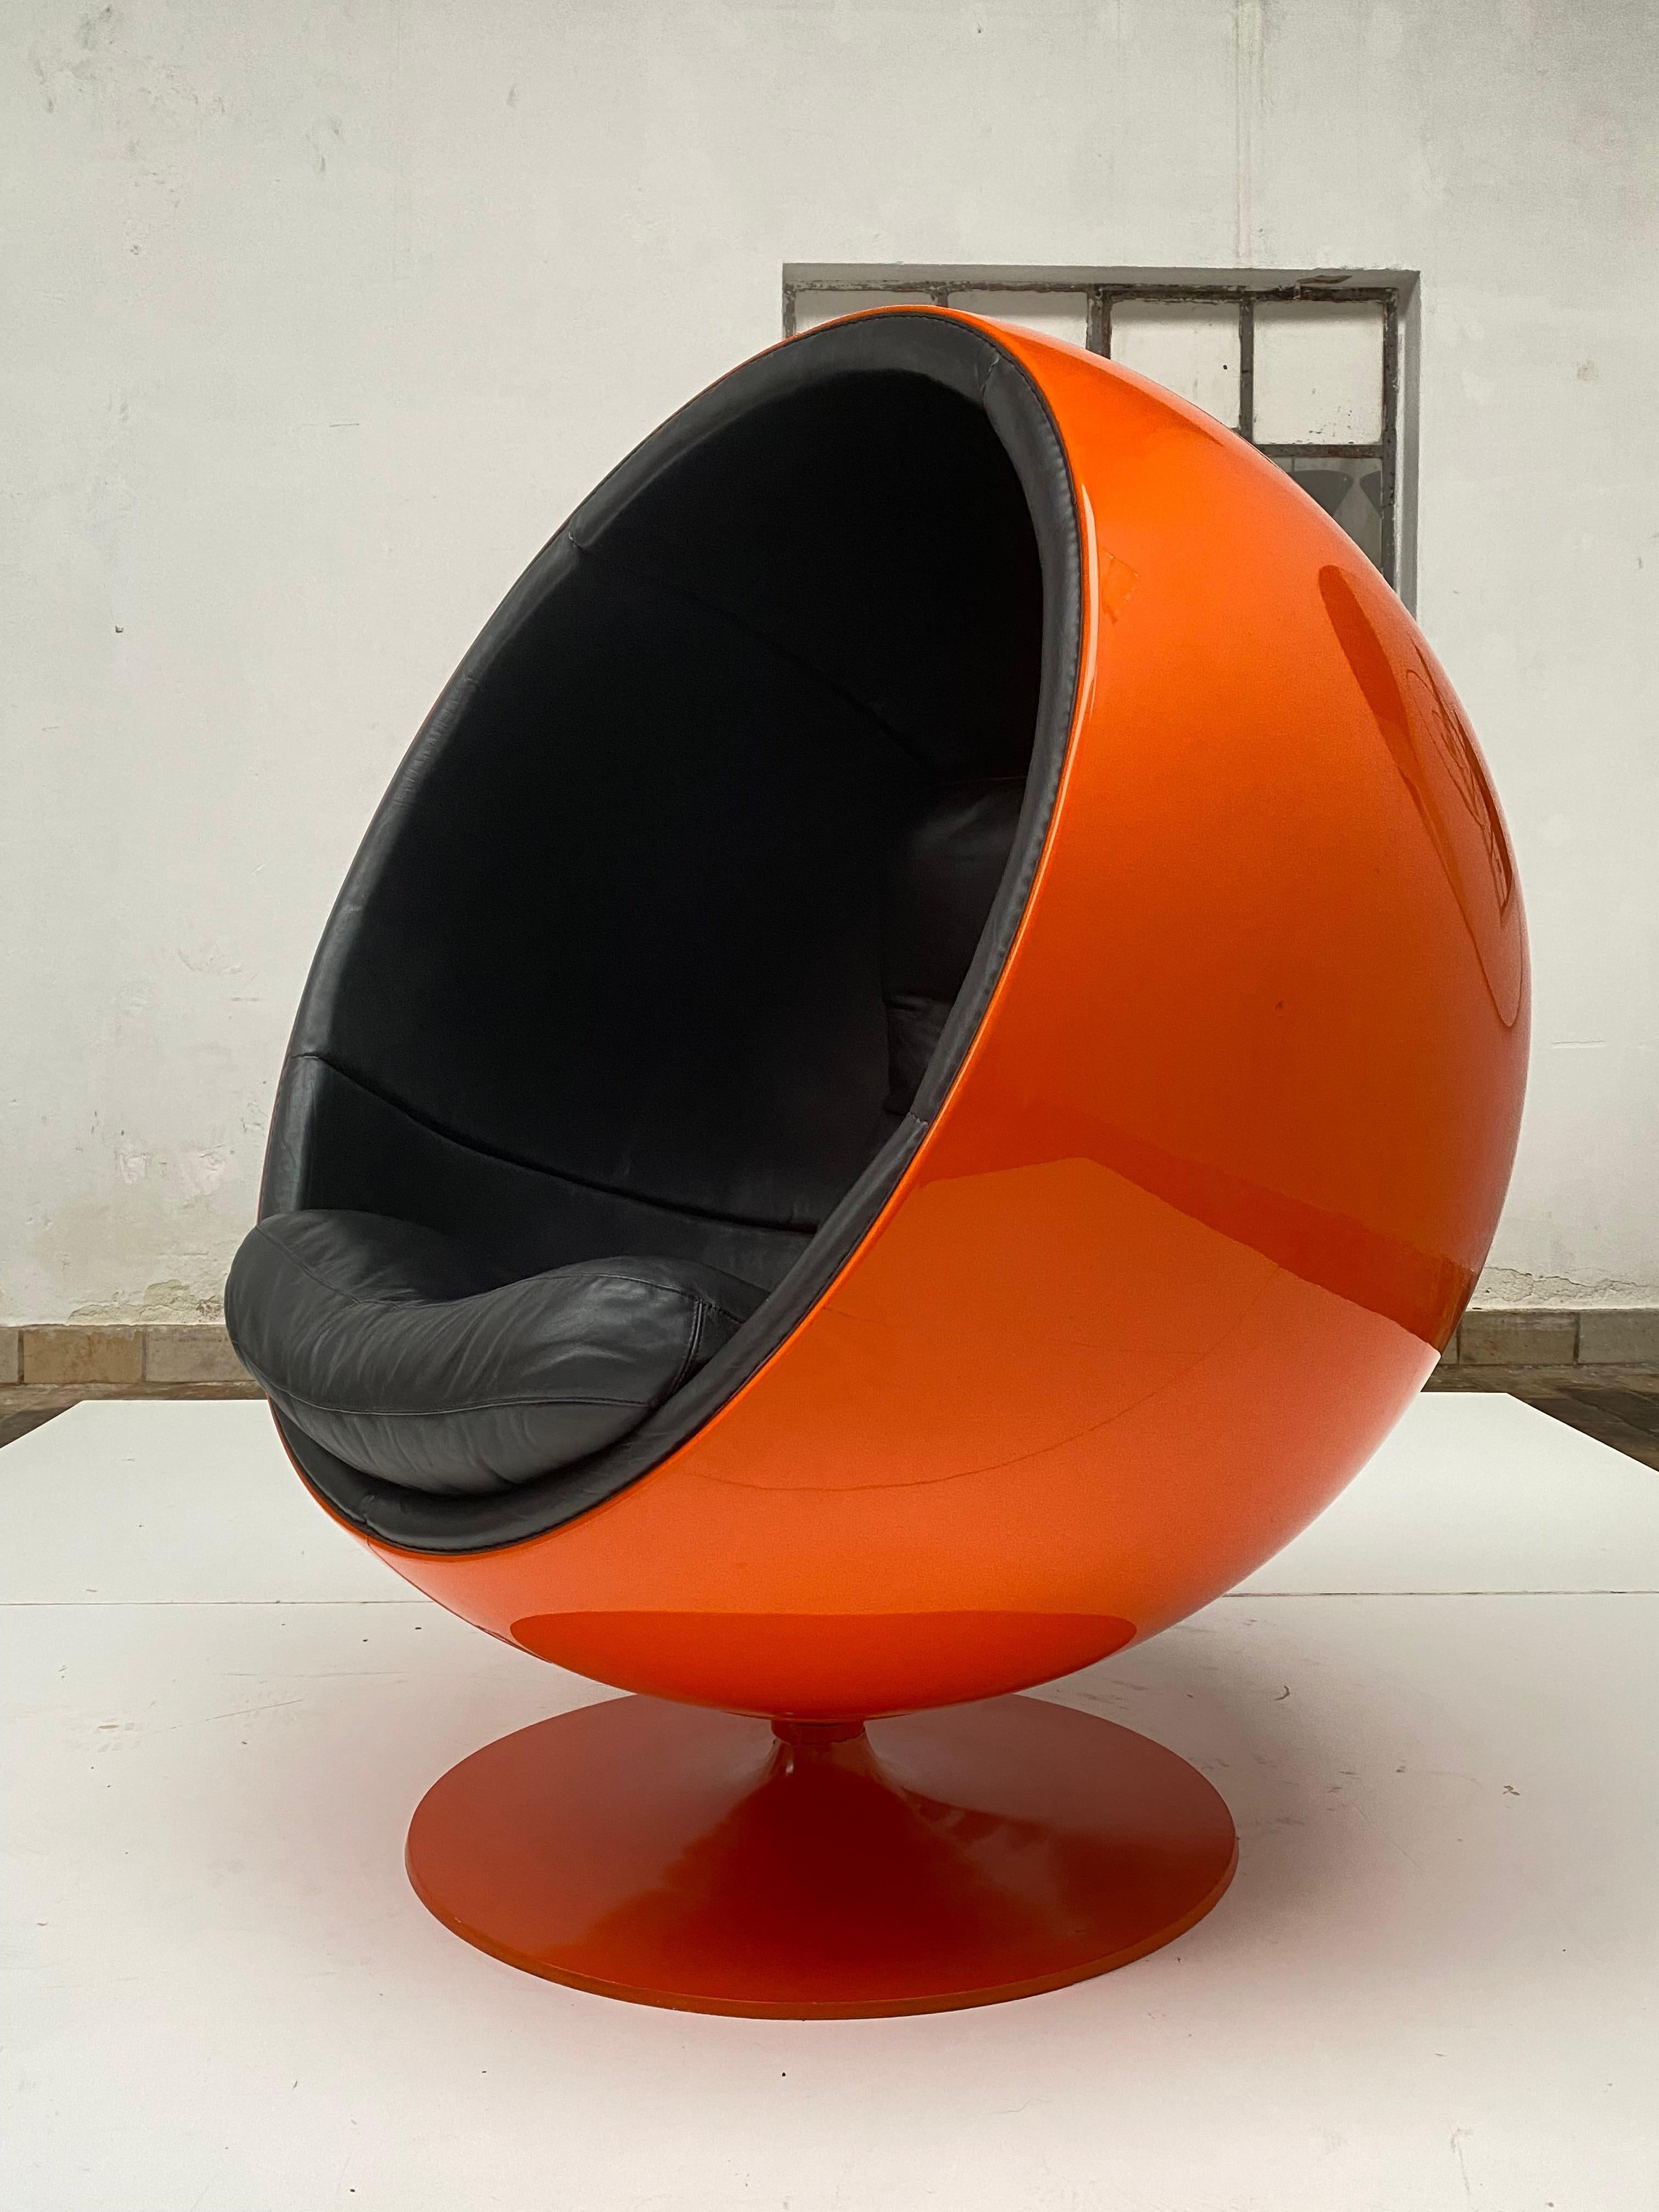 Der Kugelstuhl wurde 1963 von Eero Aarnio entworfen und von Asko in Finnland hergestellt. 

Es wurde 1966 auf der Internationalen Möbelmesse in Köln vorgestellt und wurde zu Aarnios internationalem Durchbruch.

Der Ball Chair ist zum bekanntesten